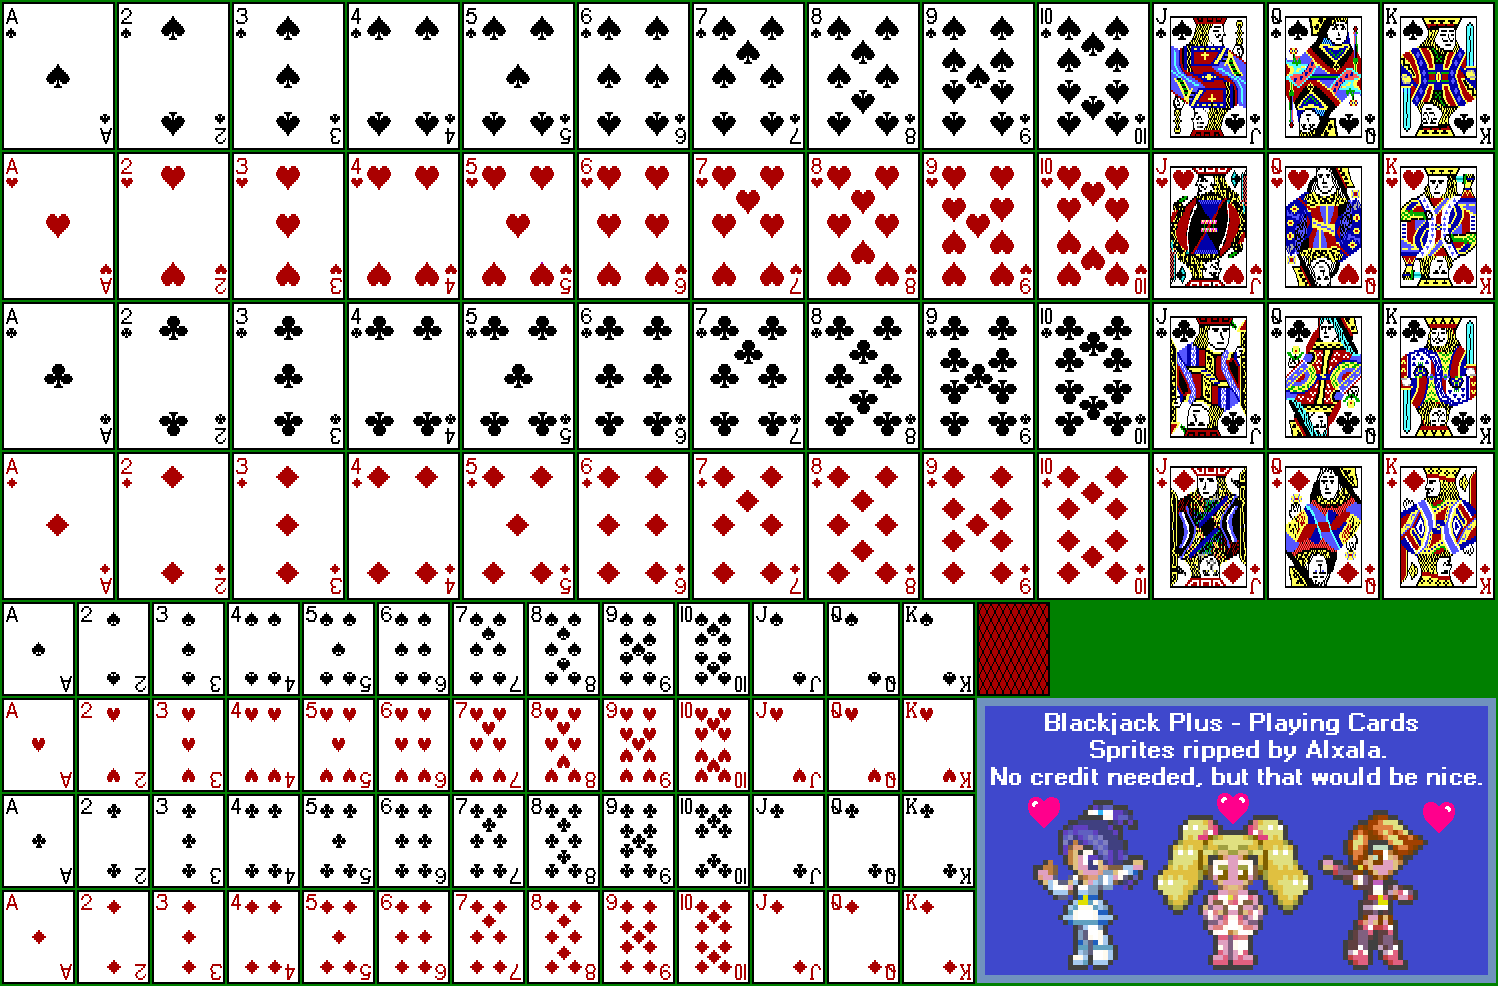 Blackjack Plus - Playing Cards